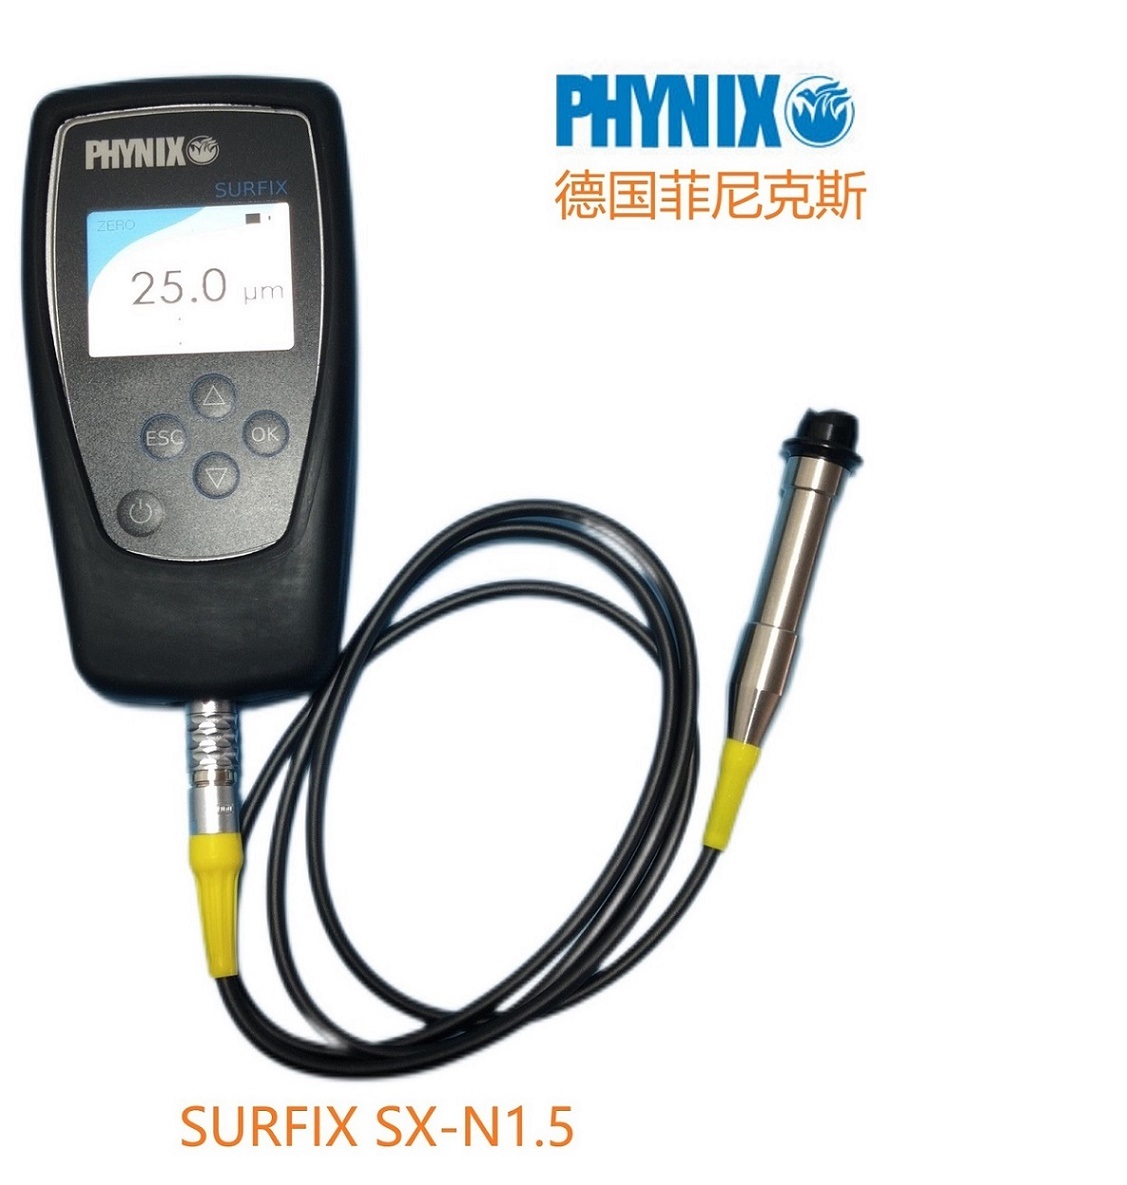 德国菲尼克斯SURFIX SX-N1.5油漆测厚仪